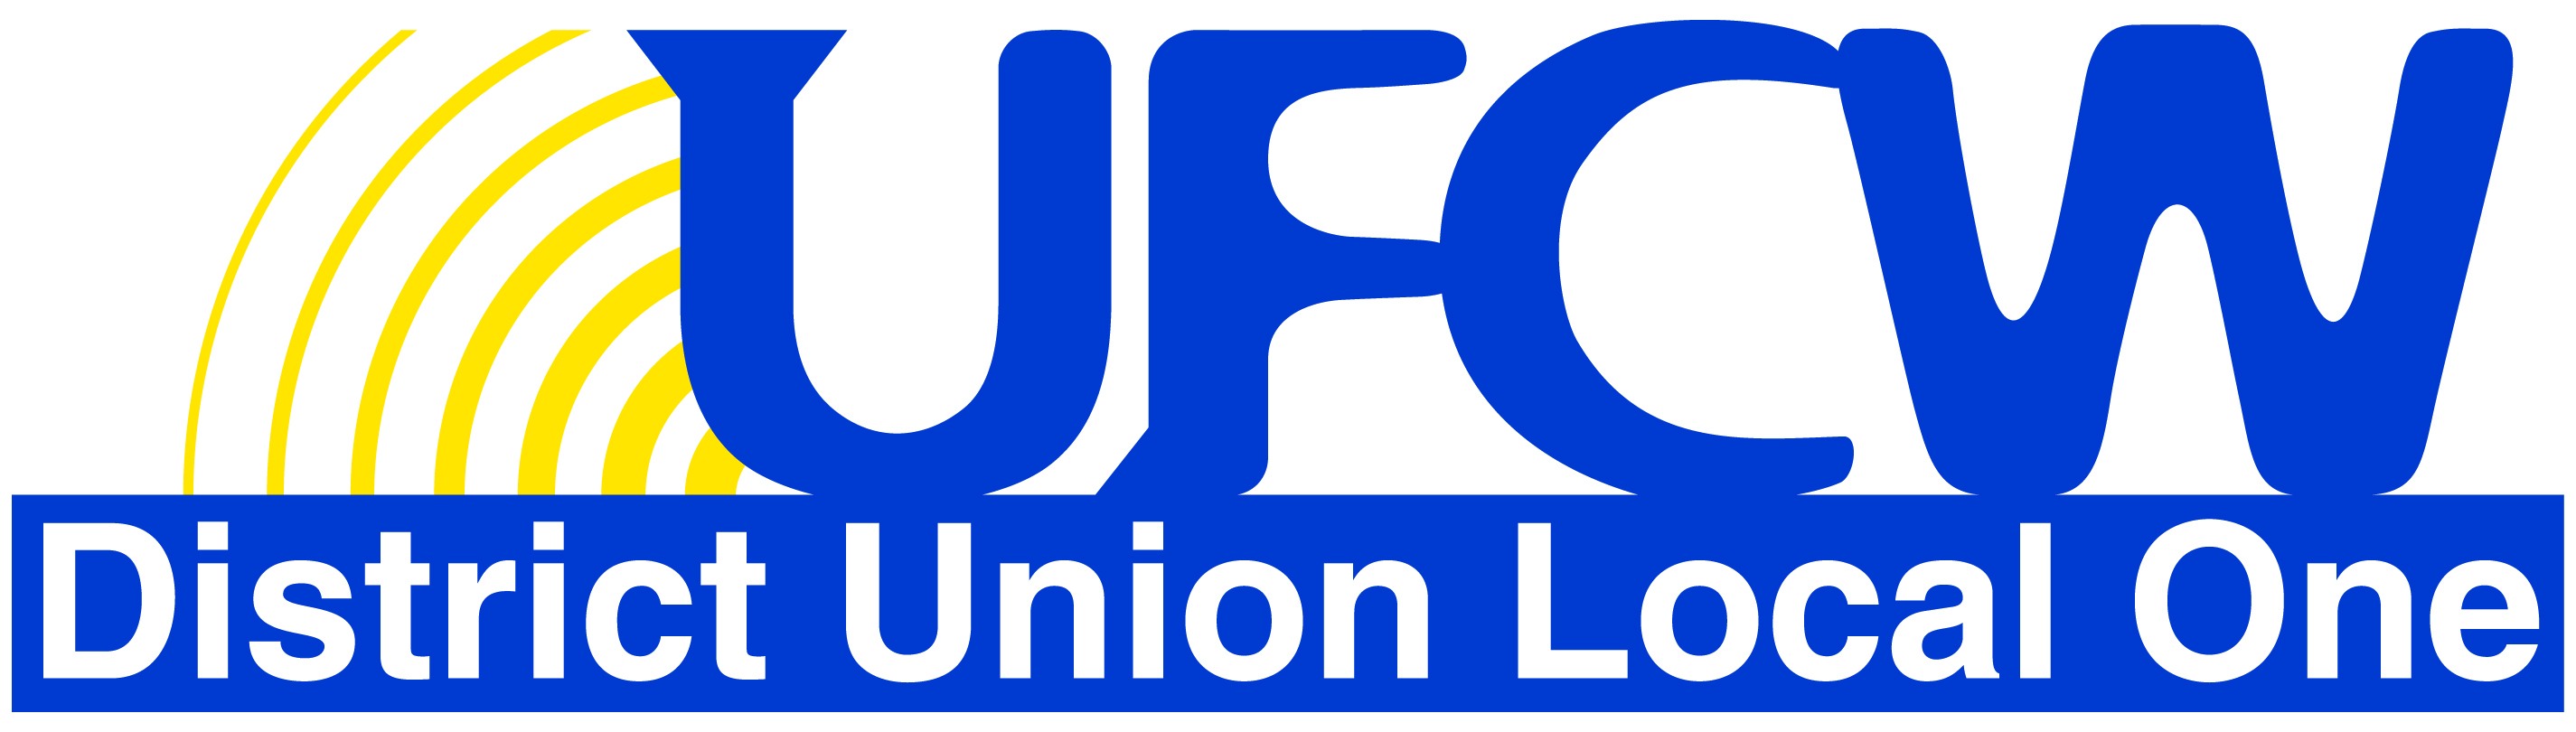 Utica - UFCW Logo 2017